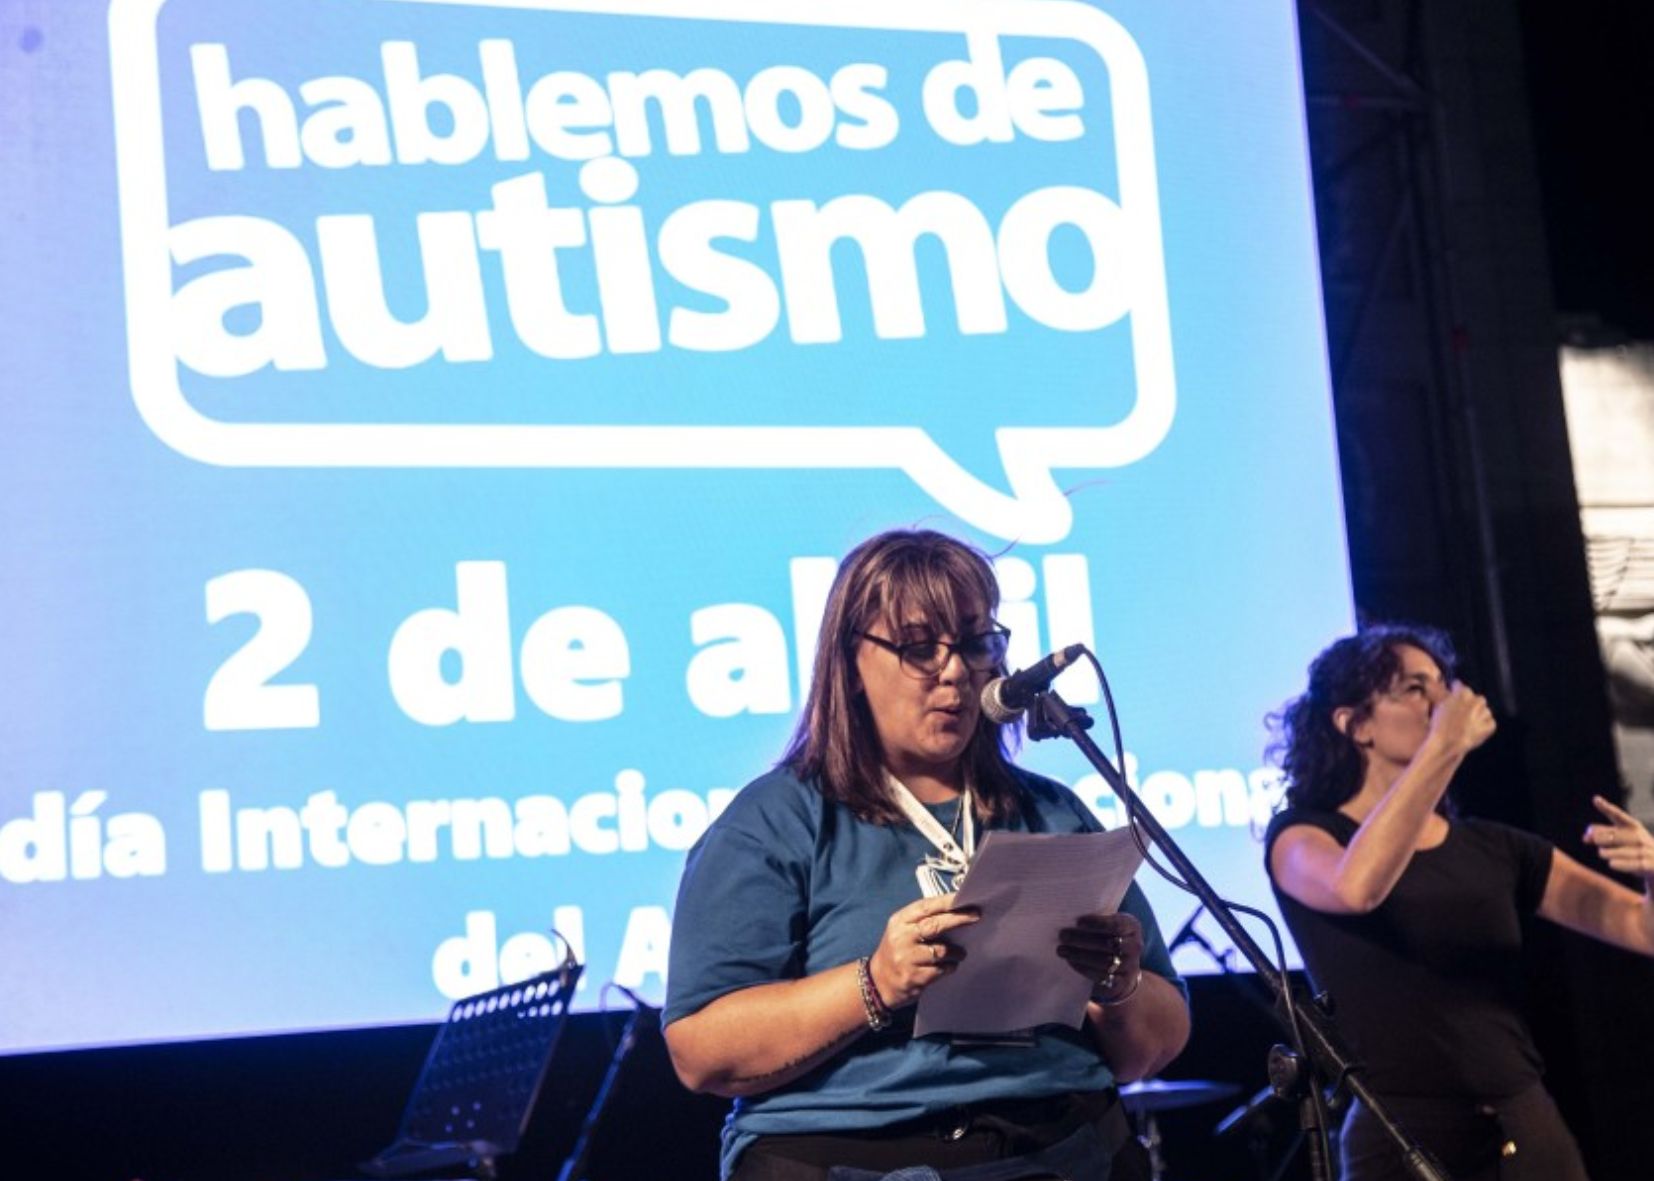 Se presenta la 13° edición de la campaña «Rosario habla de autismo»